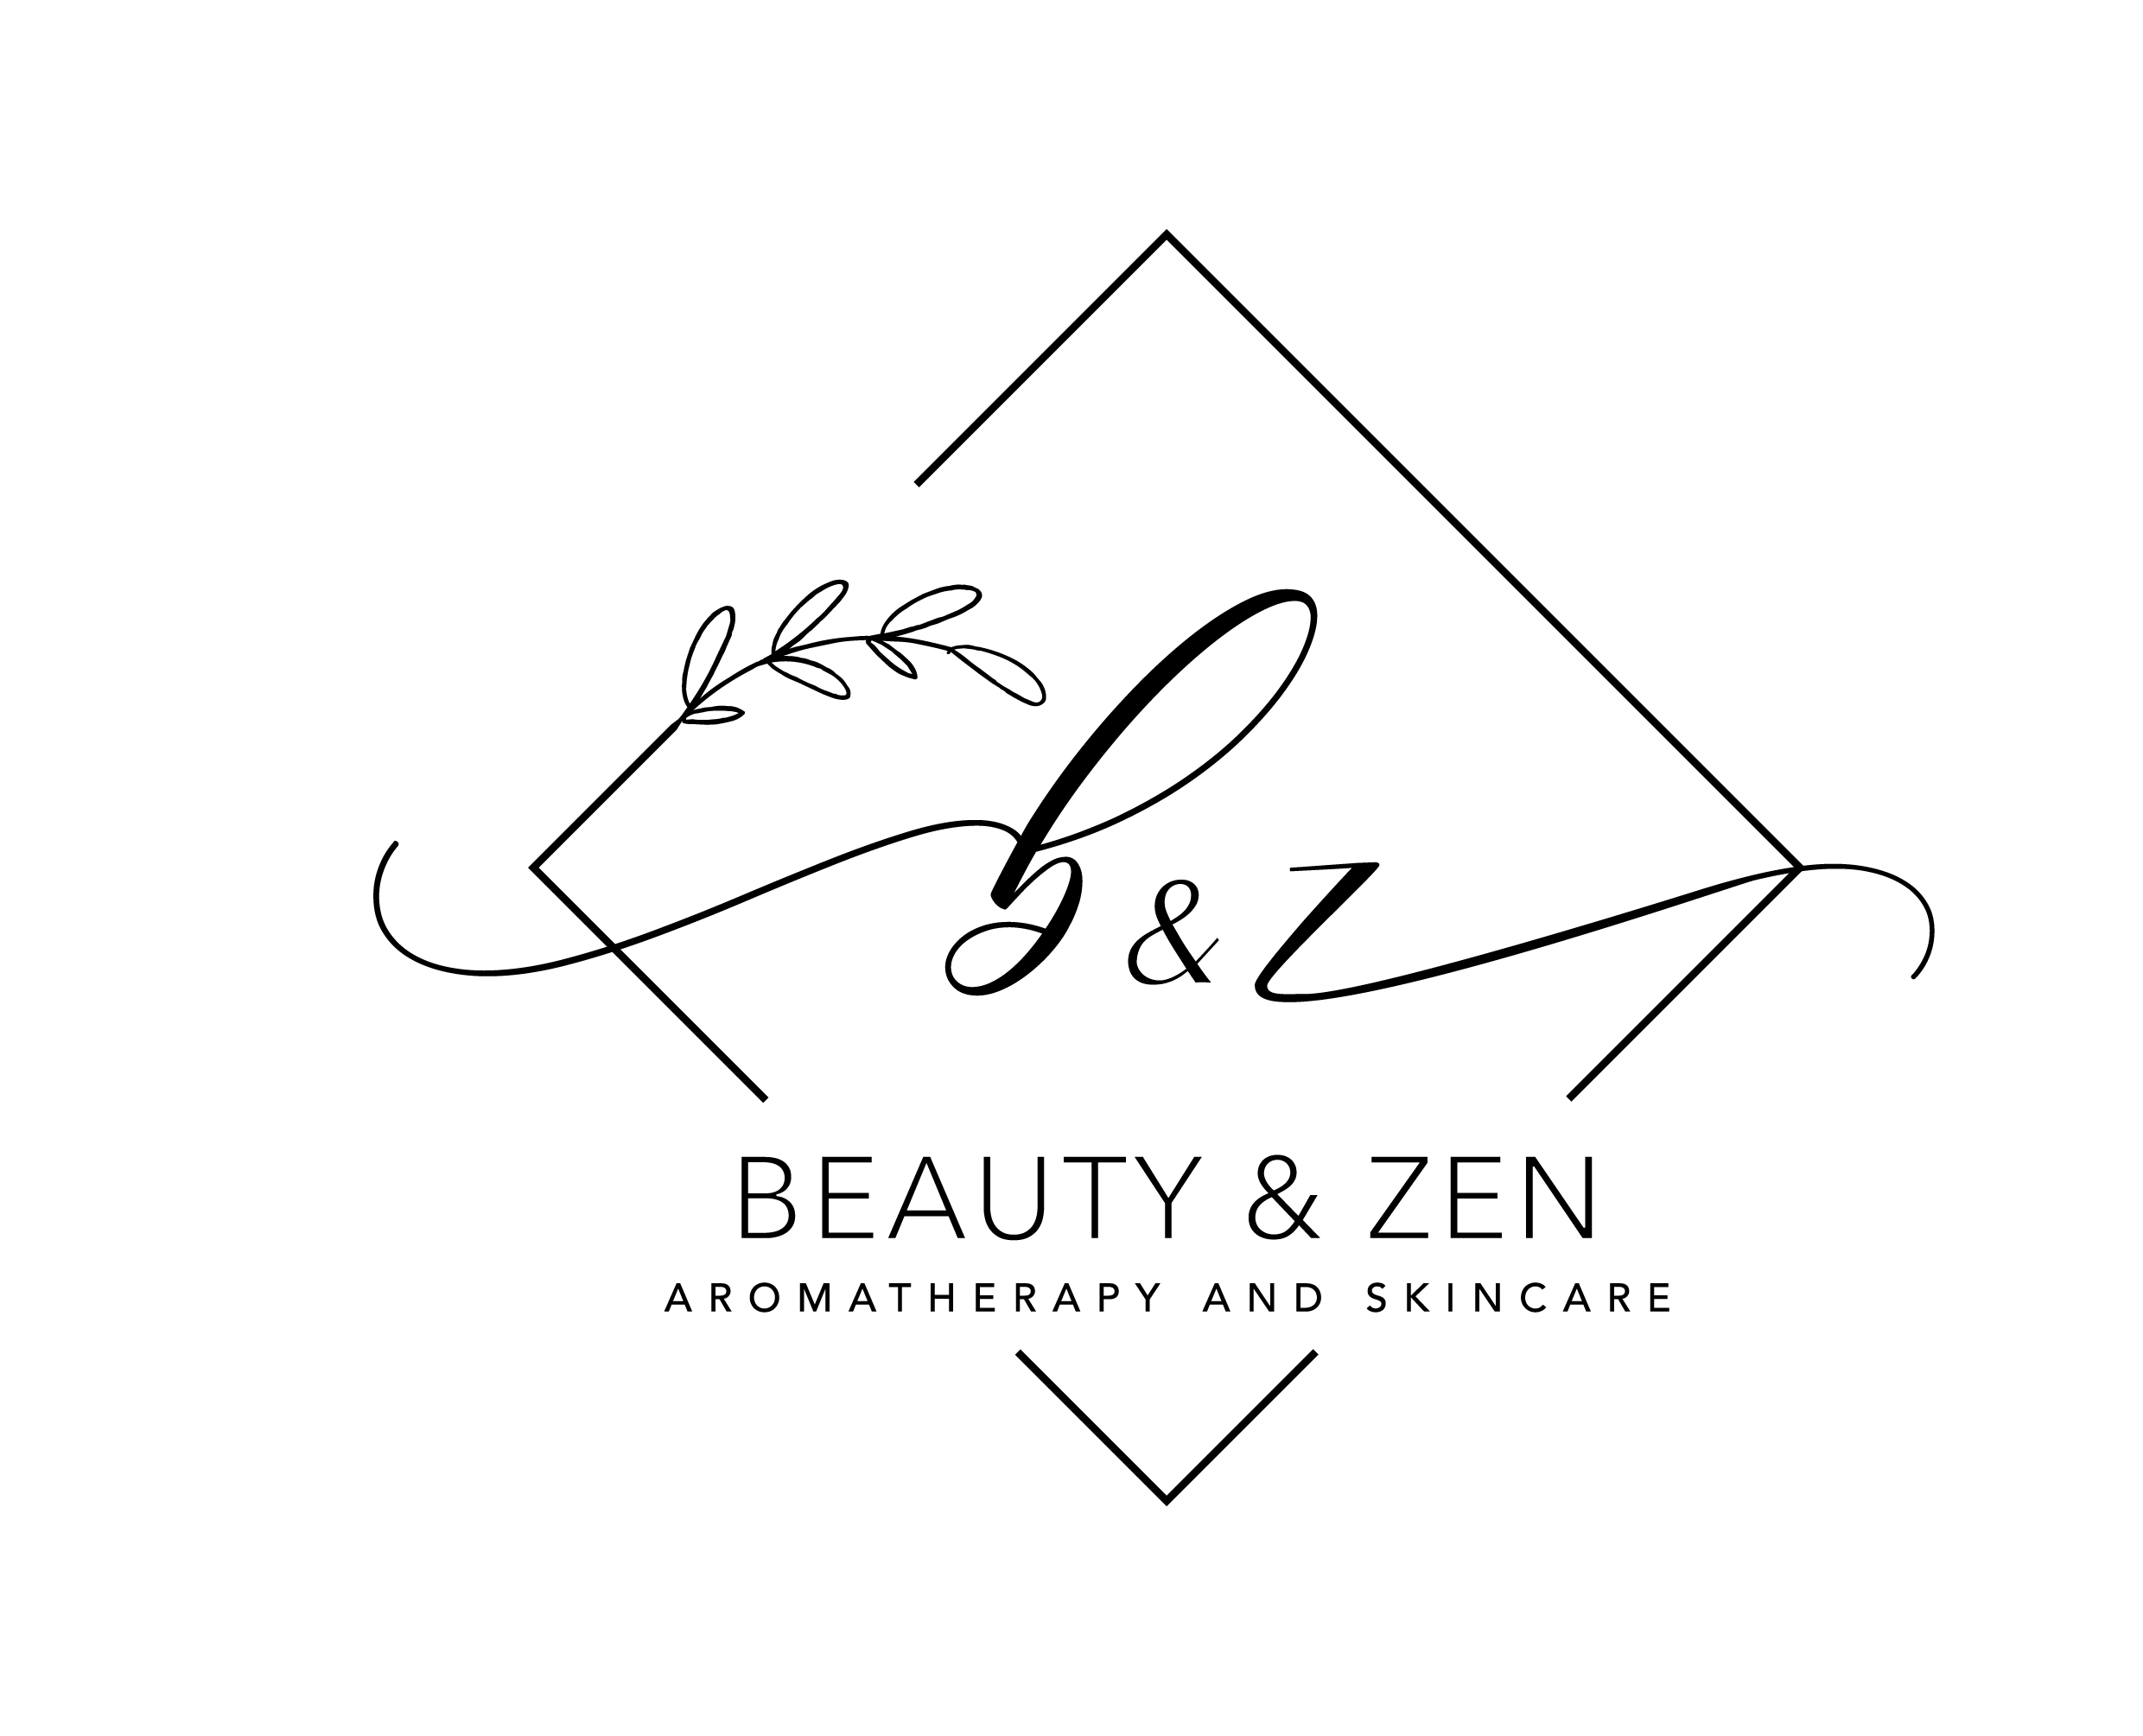 Beauty & Zen